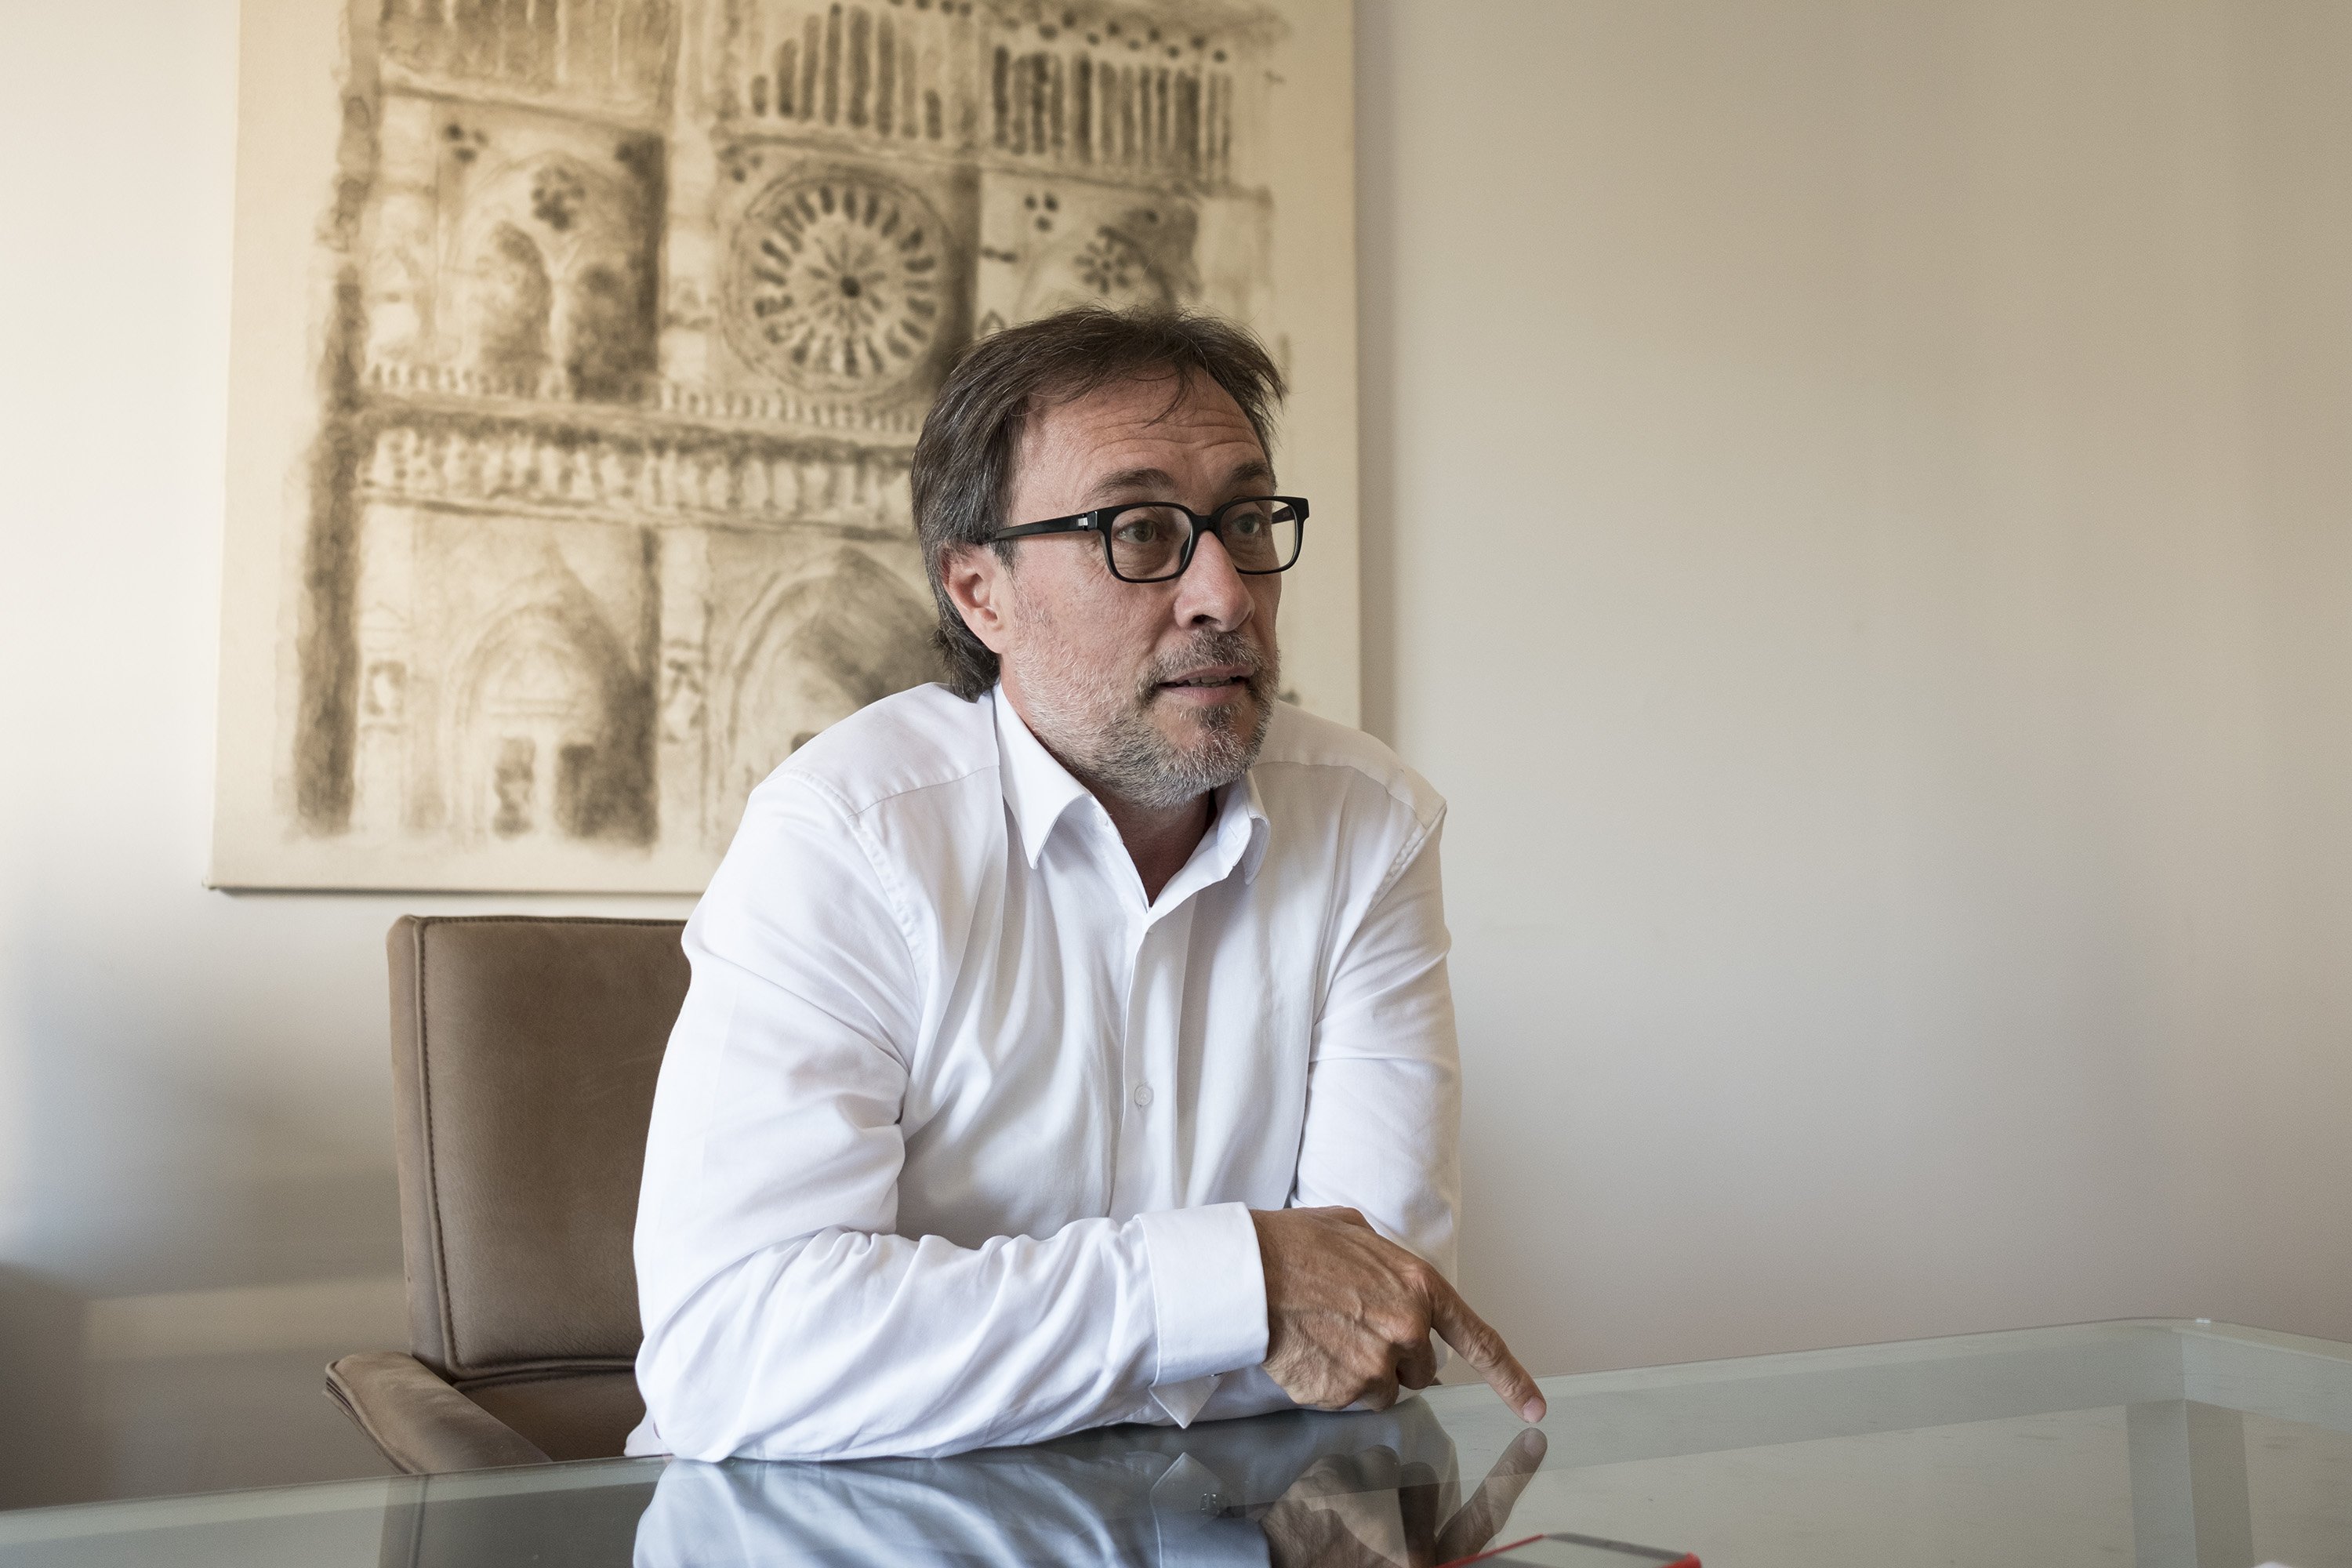 Benedito discrepa amb el Barça: “Entregarem les paperetes el 2 d’octubre”